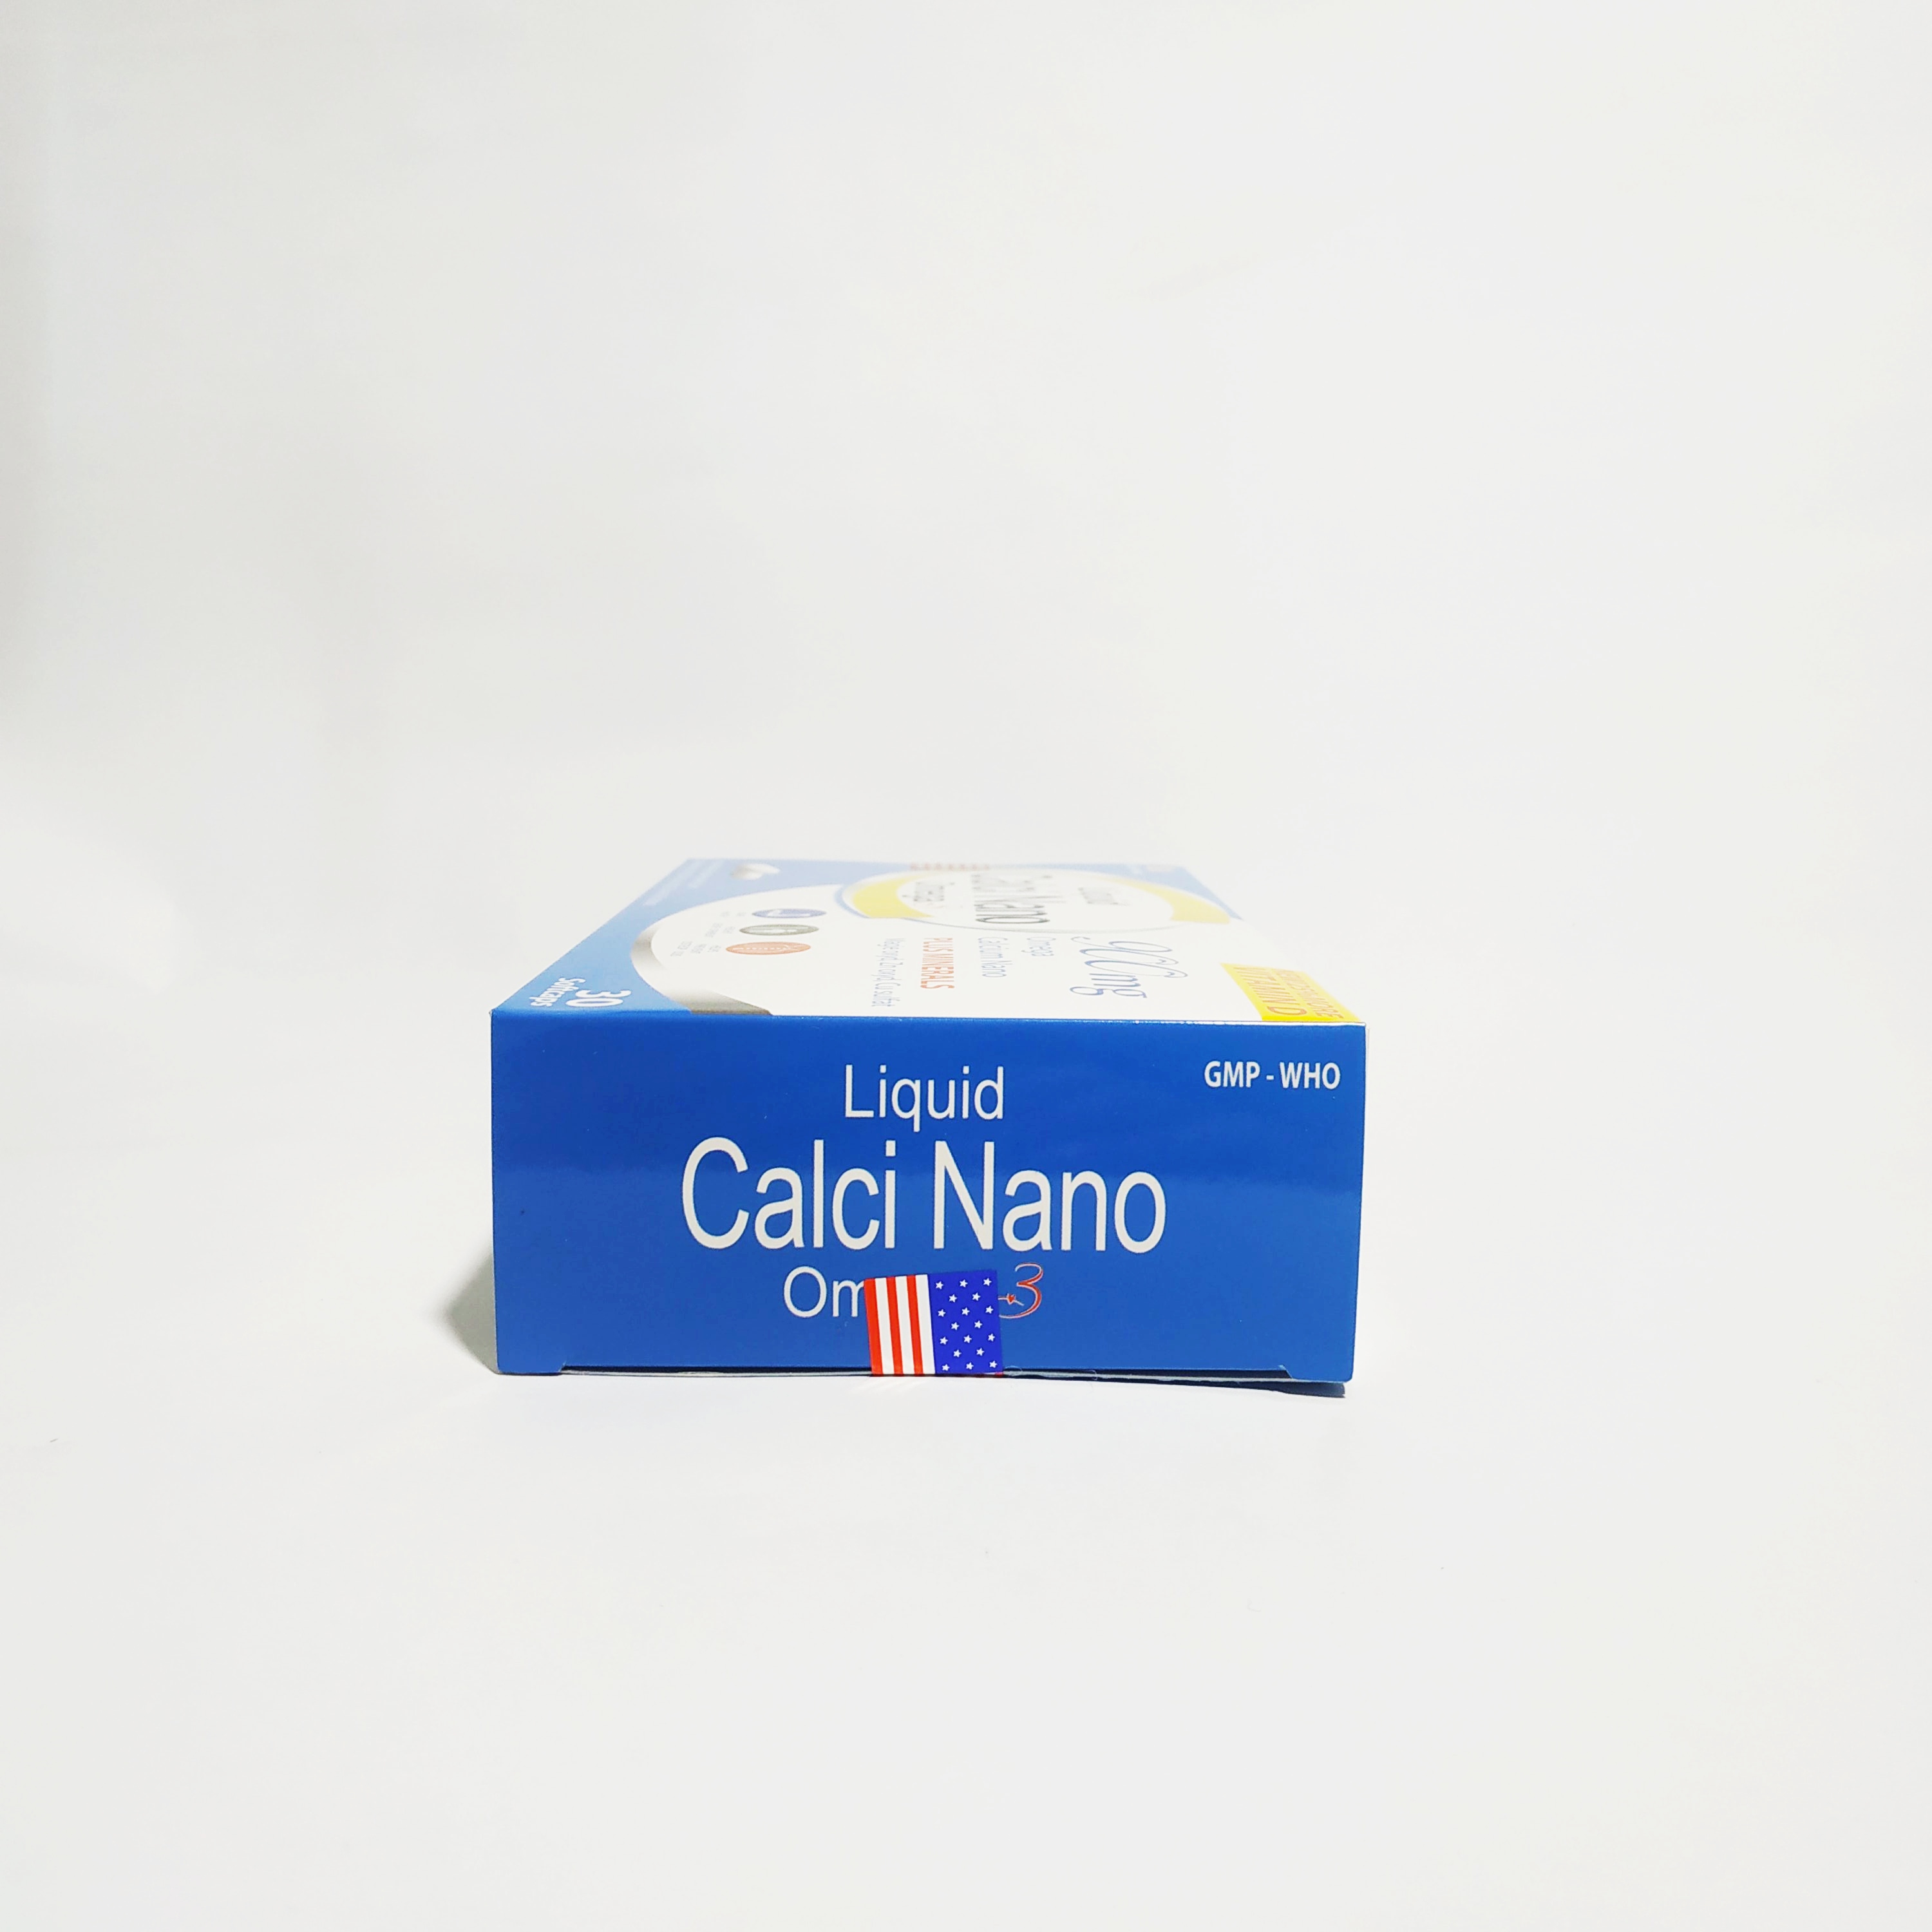 Viên Uống Bổ Sung Canxi Nano Omega 3 - Dành Cho Người Cần Bổ Sung Canxi - Liquid Calci Nano Omega 3 - Hộp 30 Viên